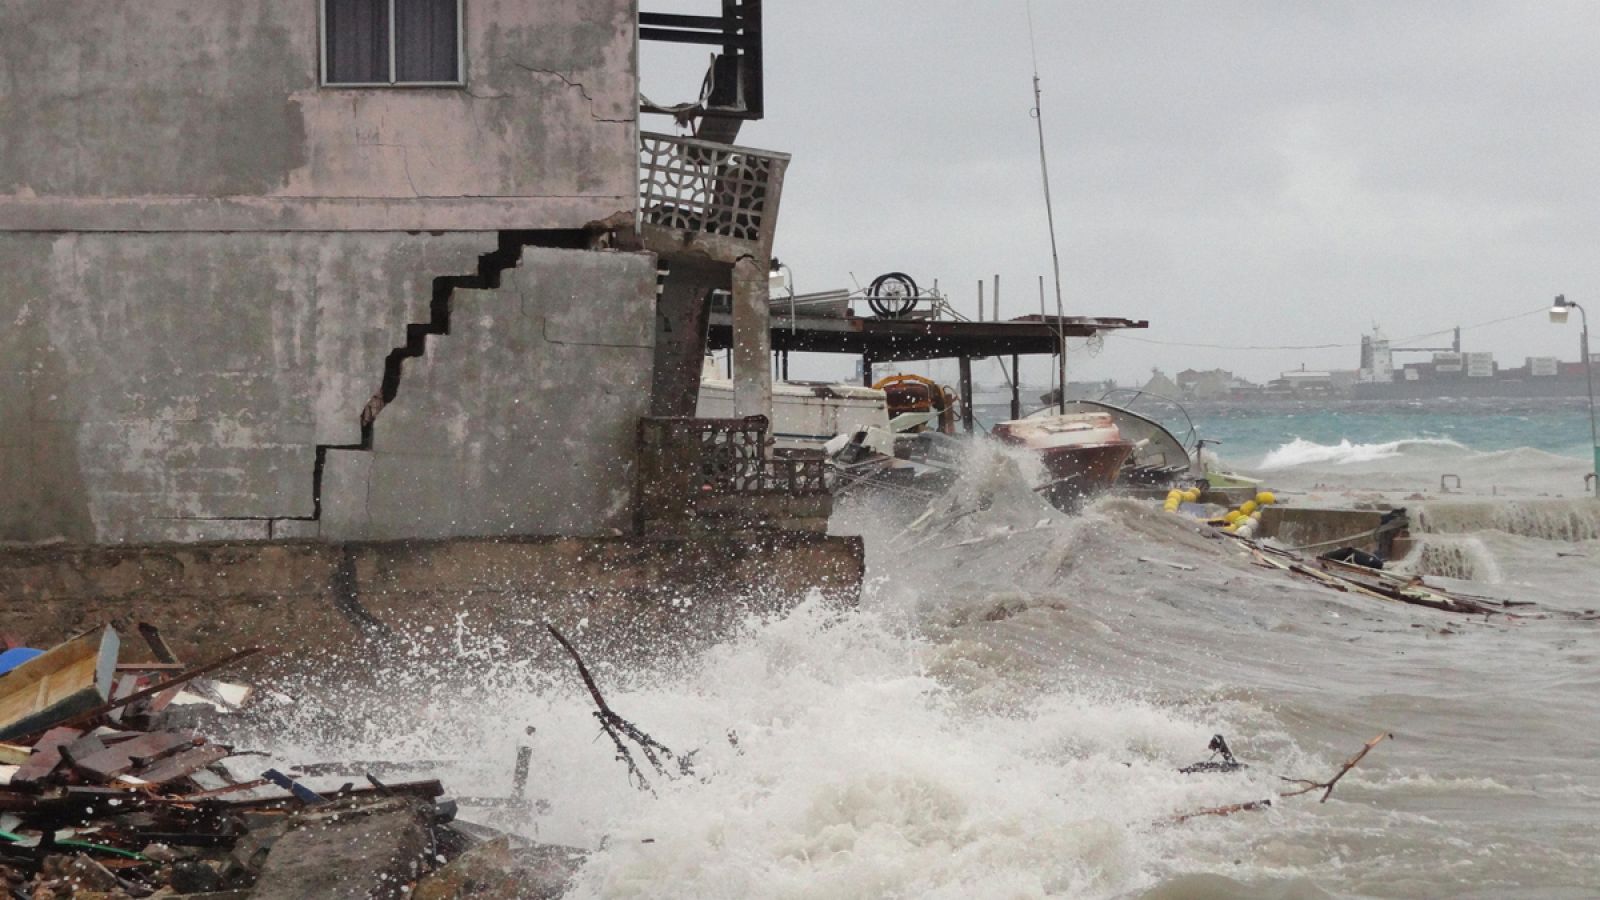 Imagen tomada en las Islas Marshall, donde los efectos de El Niño están siendo muy virulentos.